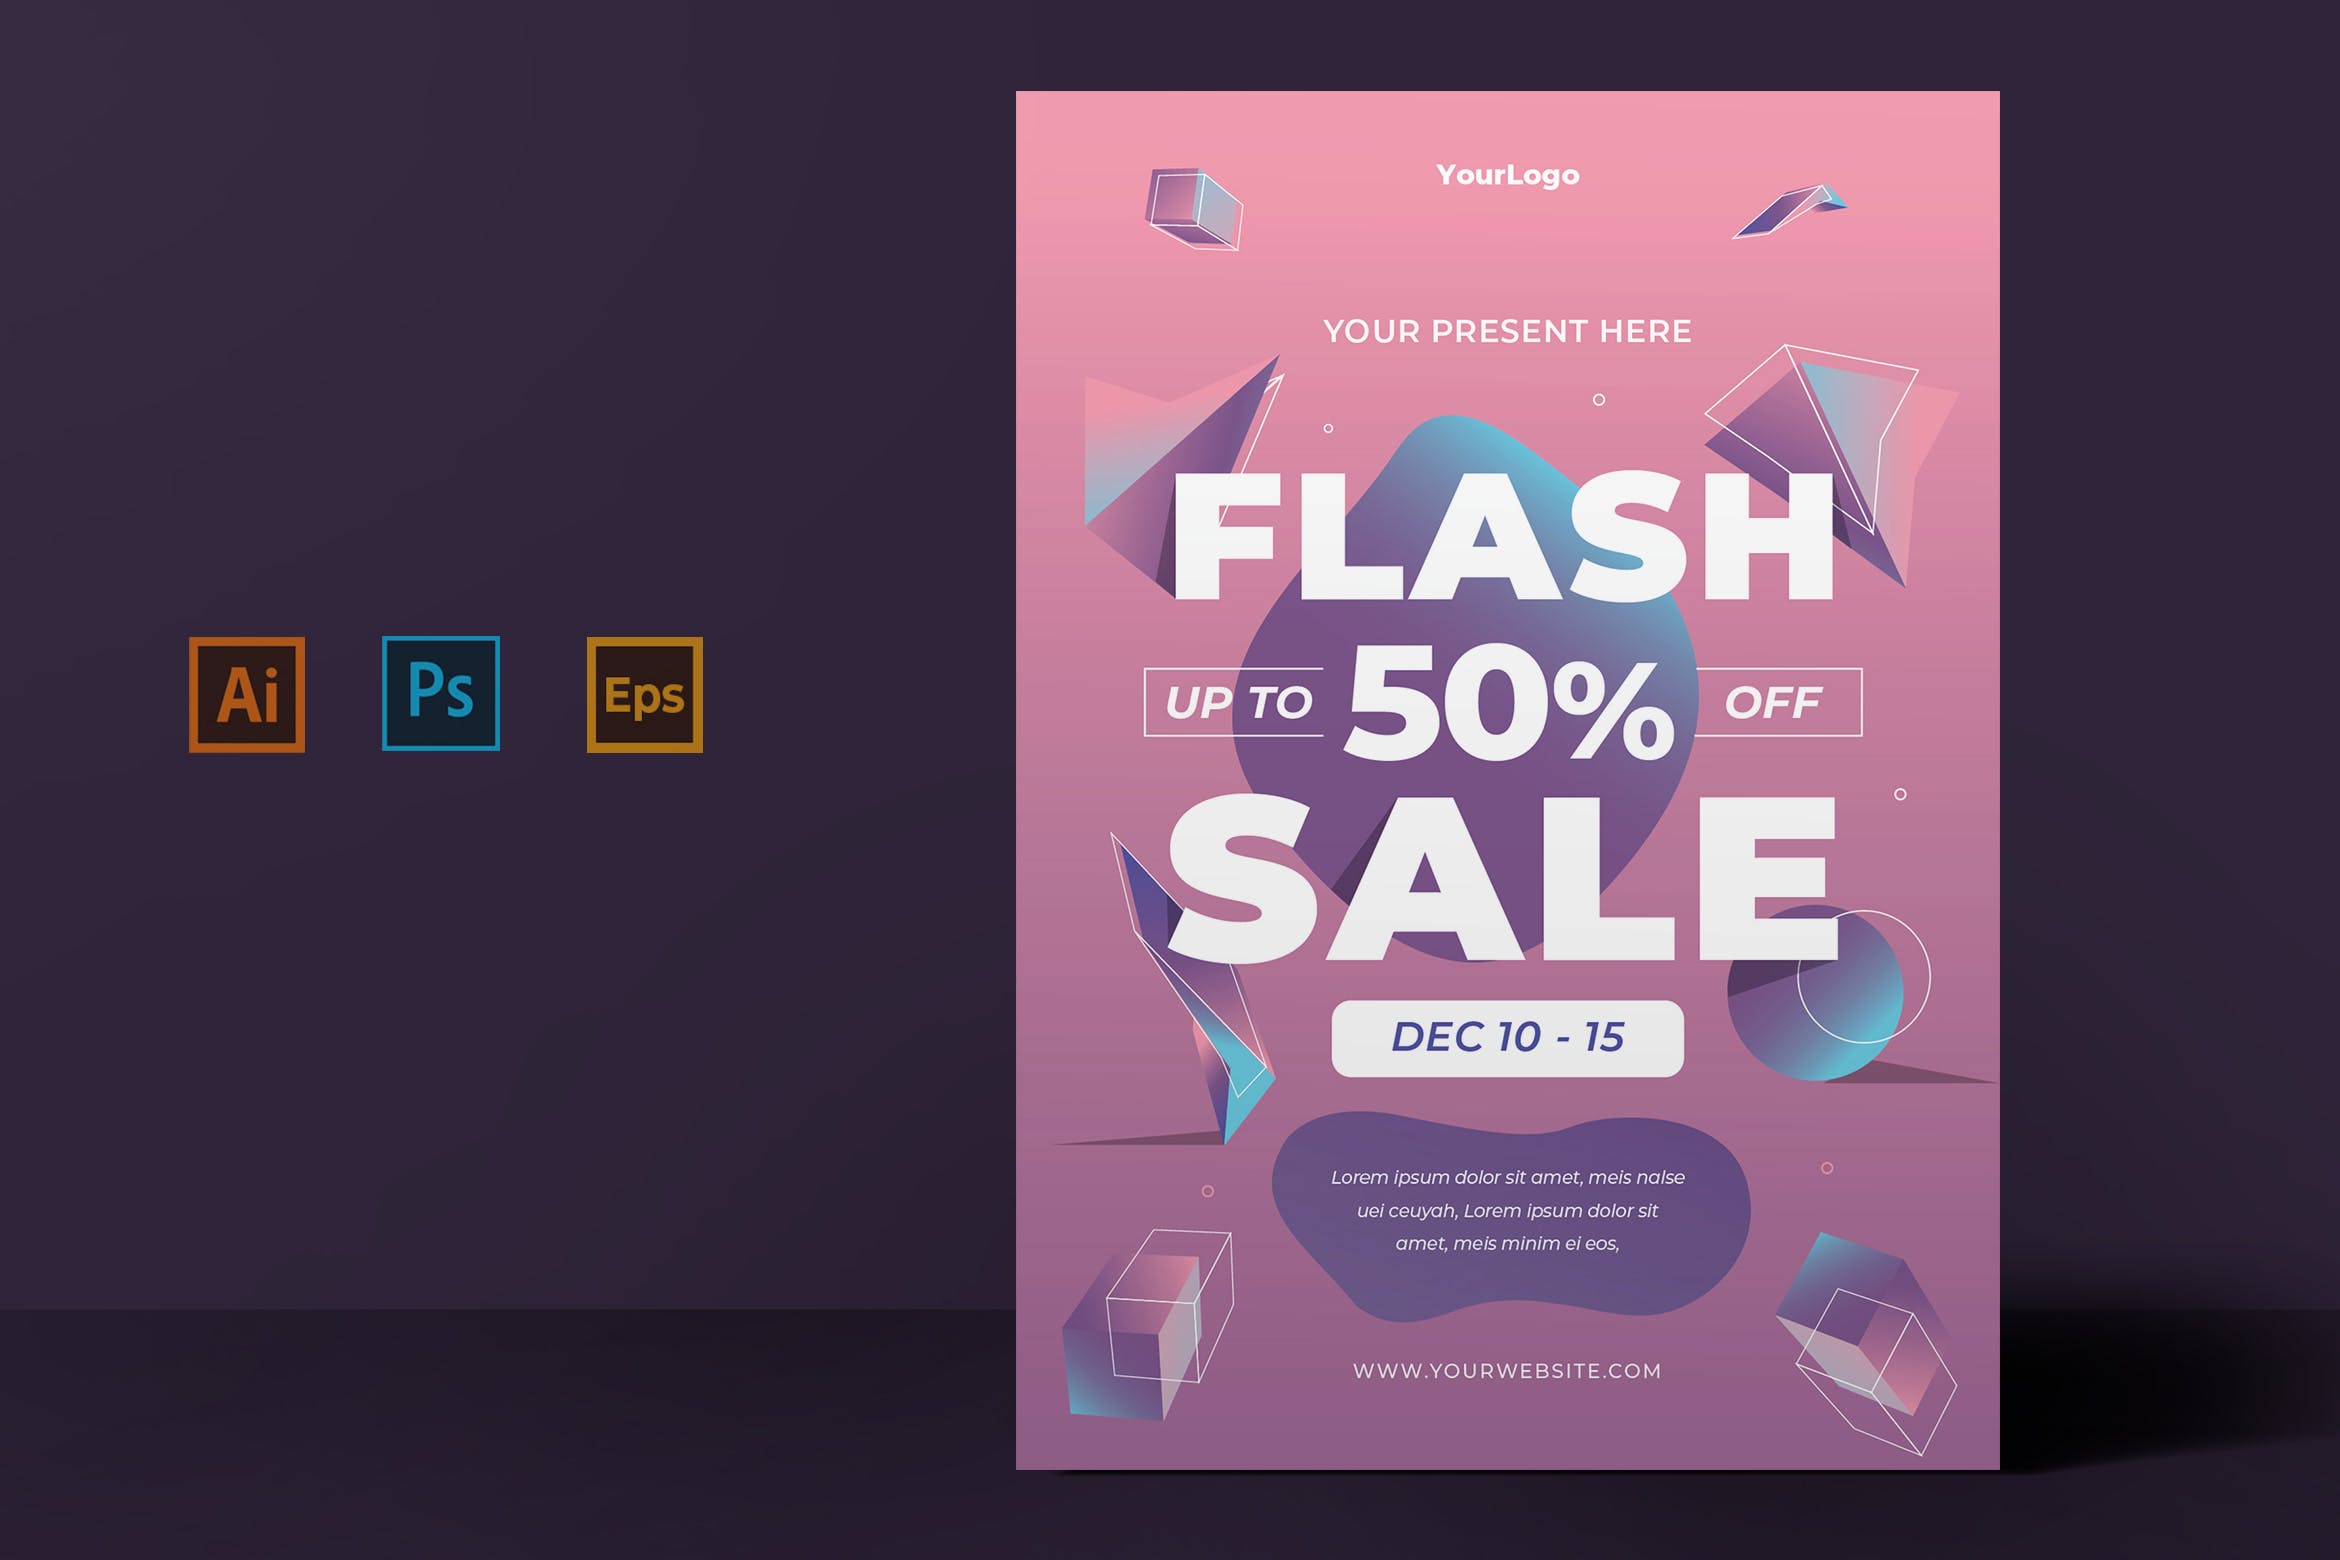 2019双11购物狂欢节促销海报设计模板素材 Flash Sale Template插图